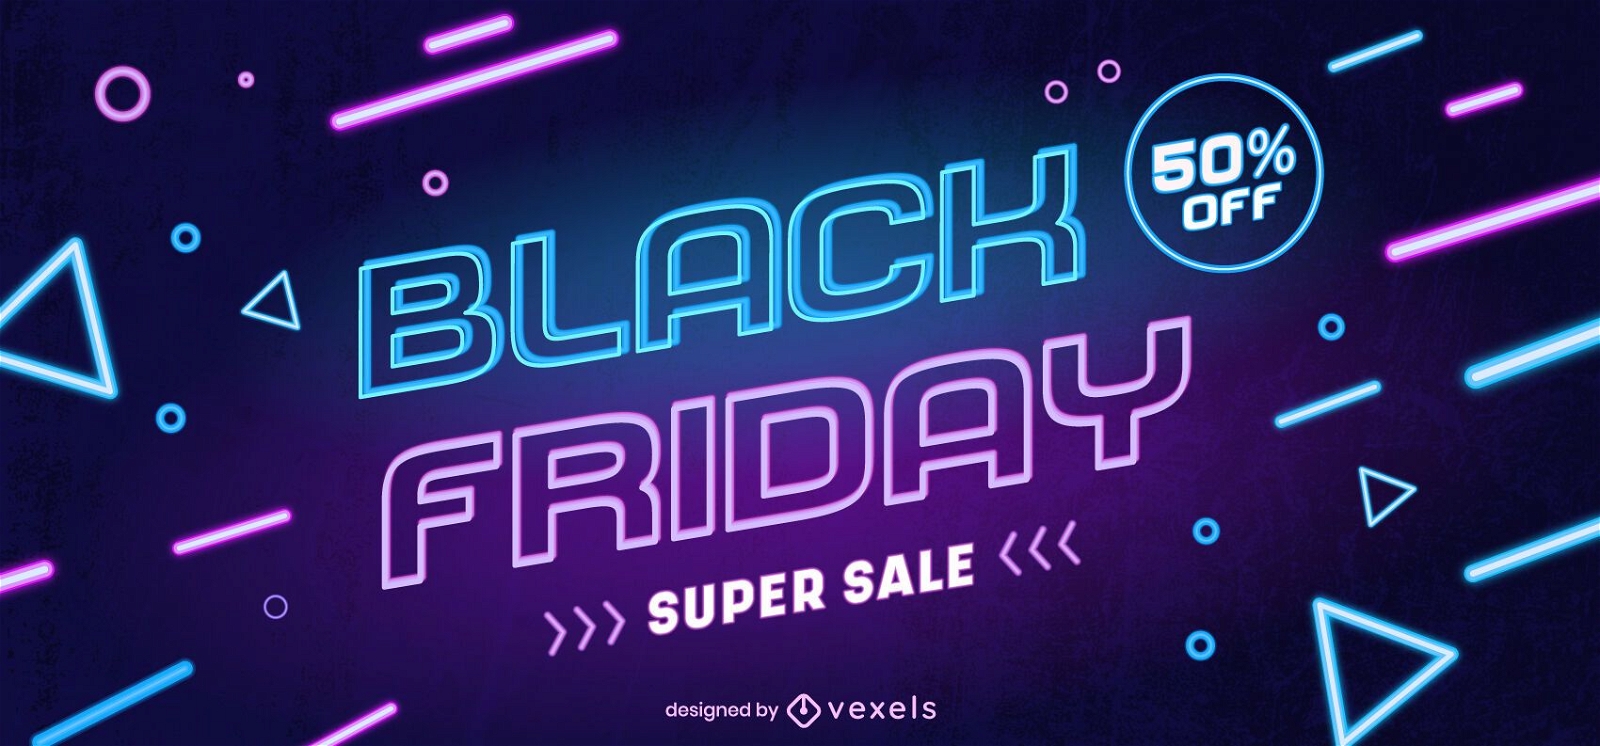 Black friday super sale web slider